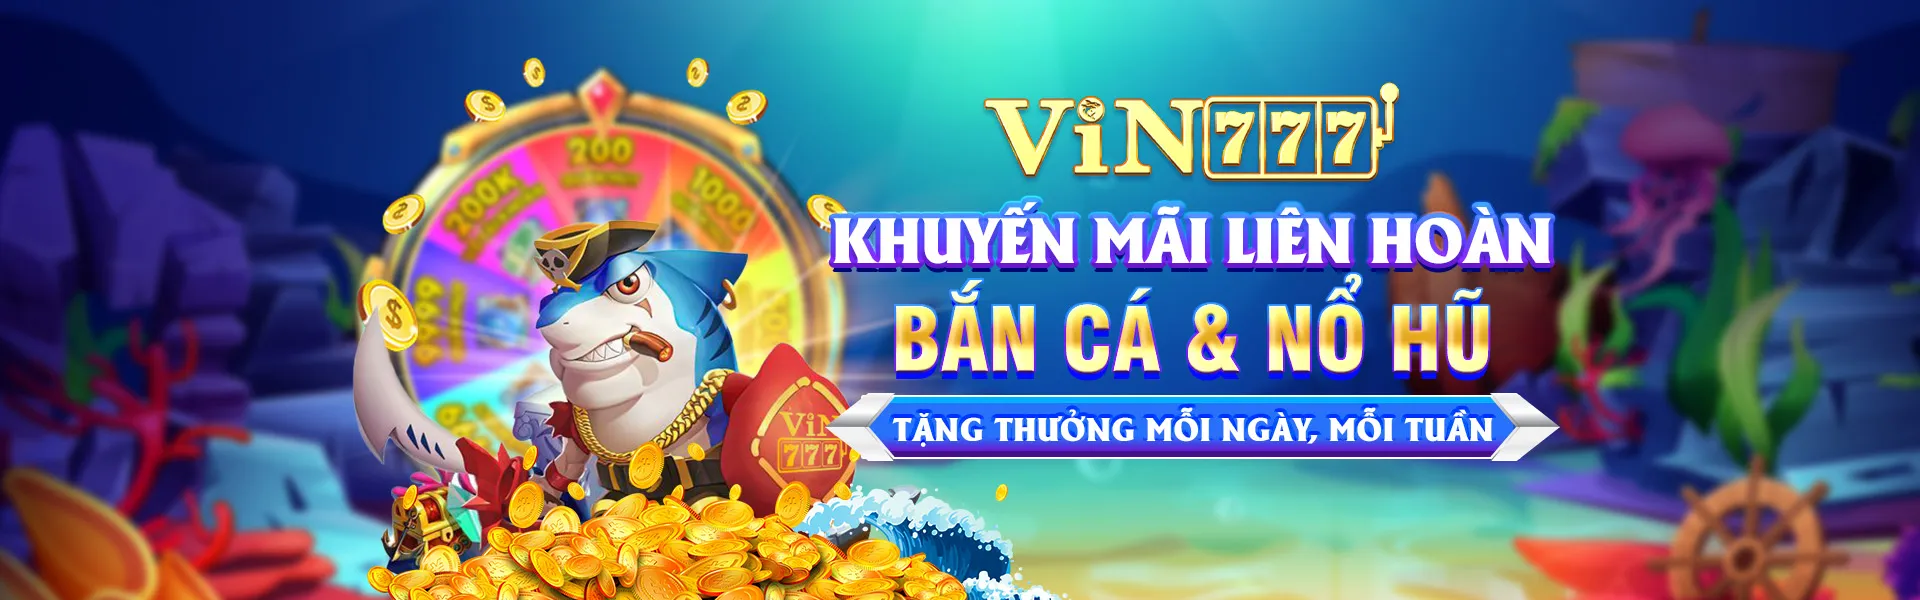 banner vin777